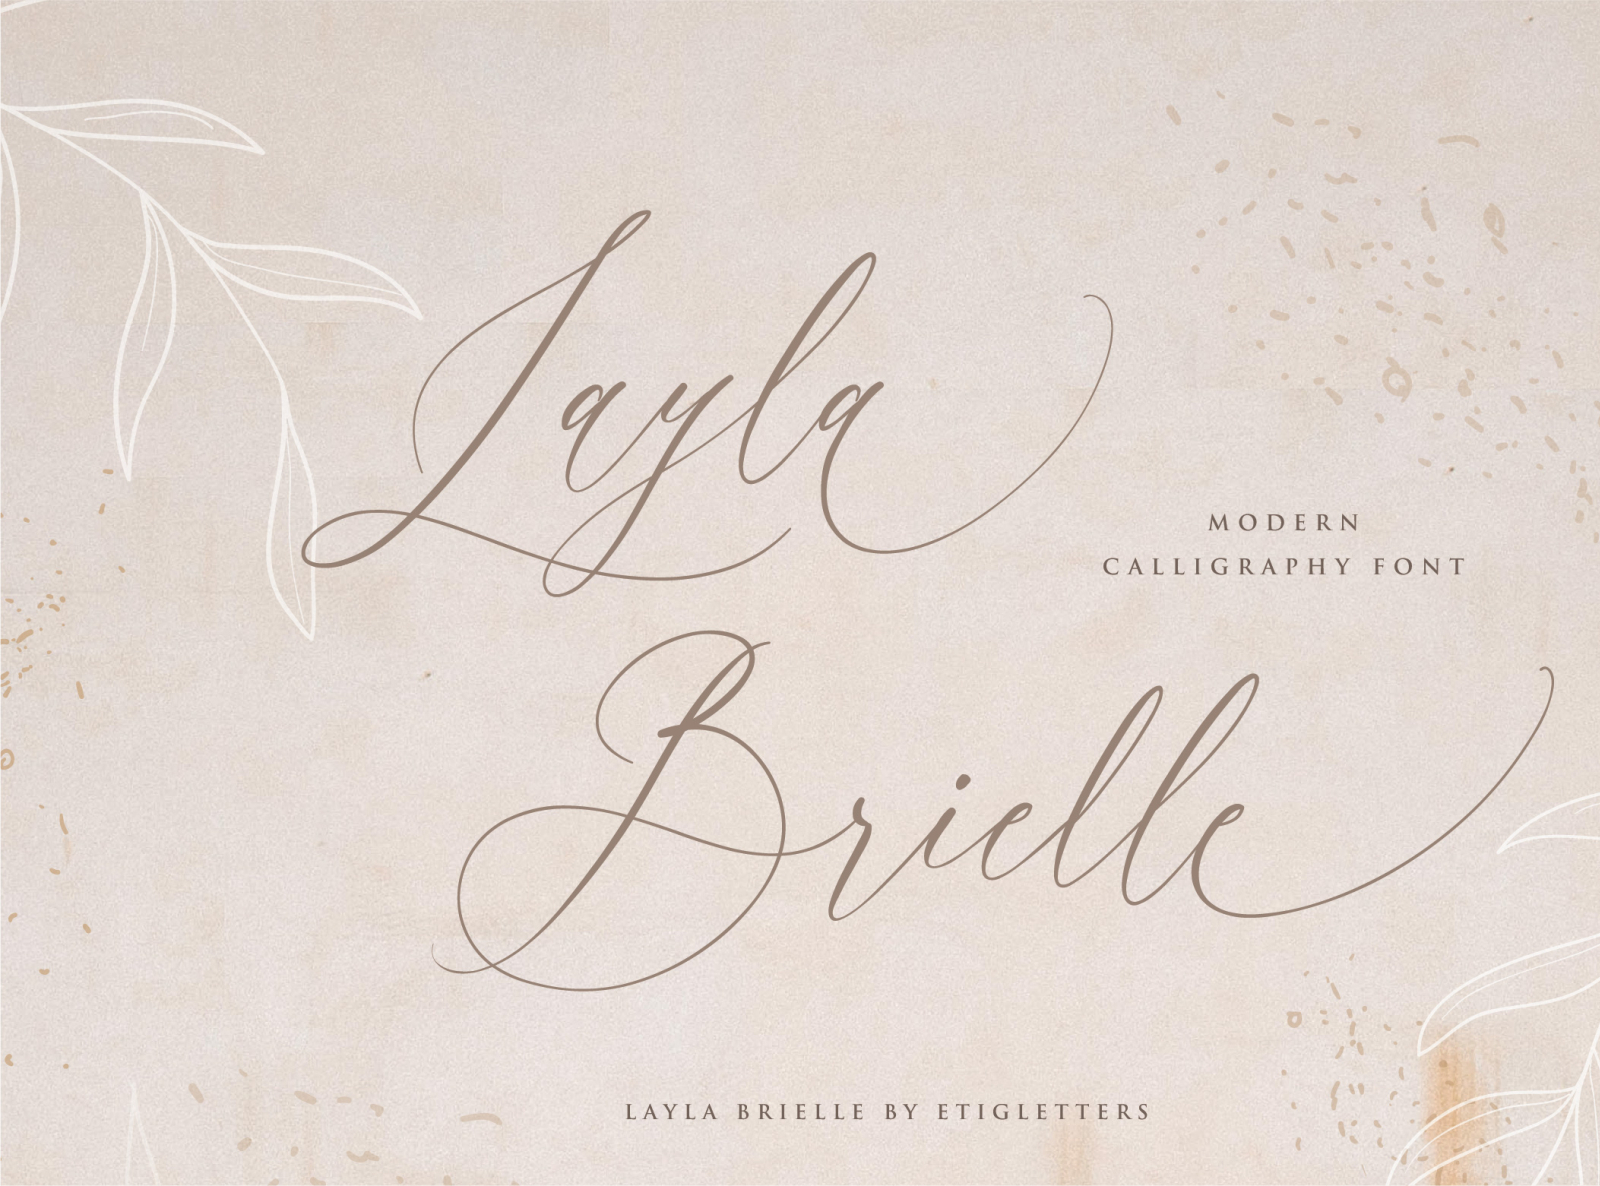 Layla Brielle Wedding Font by Etigletters on Dribbble